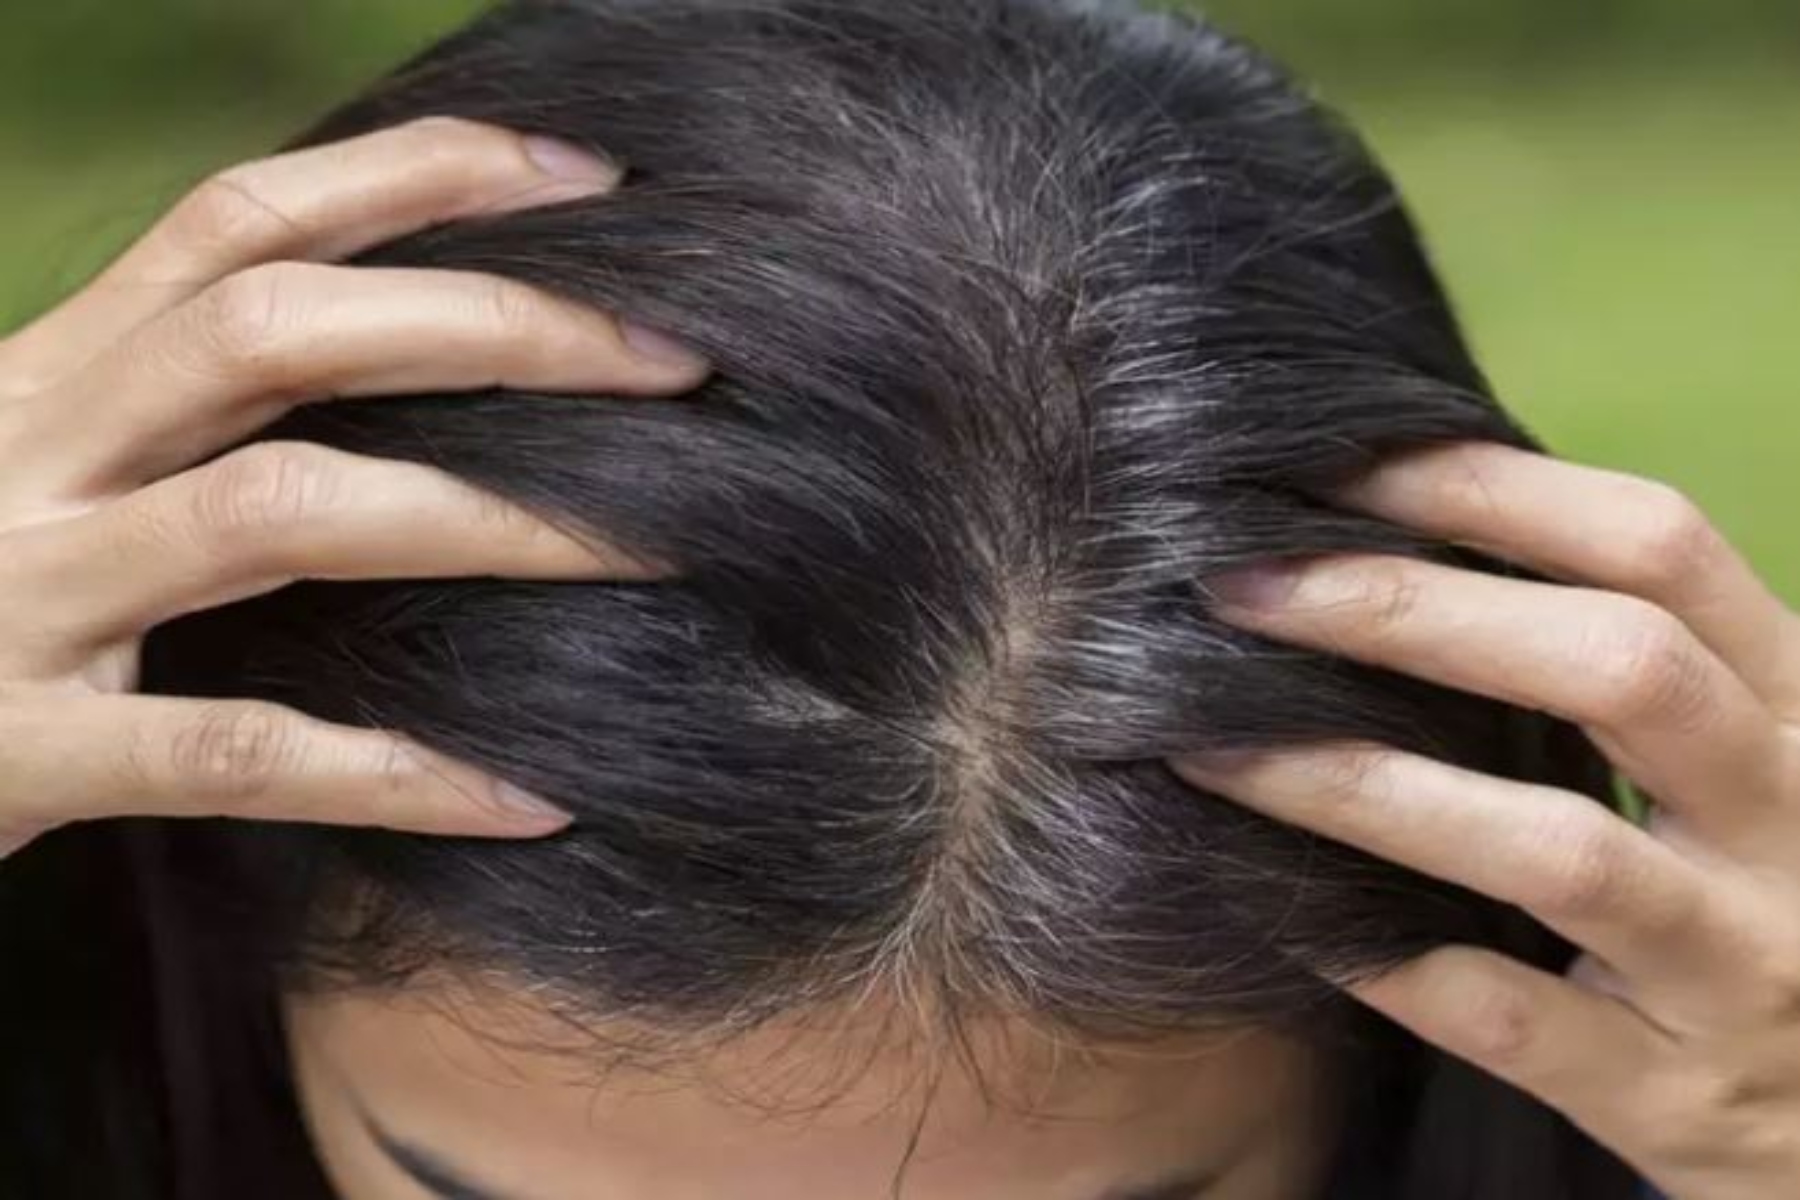 Γκρίζα μαλλιά: Μια φυτική συνταγή για να καθυστερήσει το γκριζάρισμα των μαλλιών σας